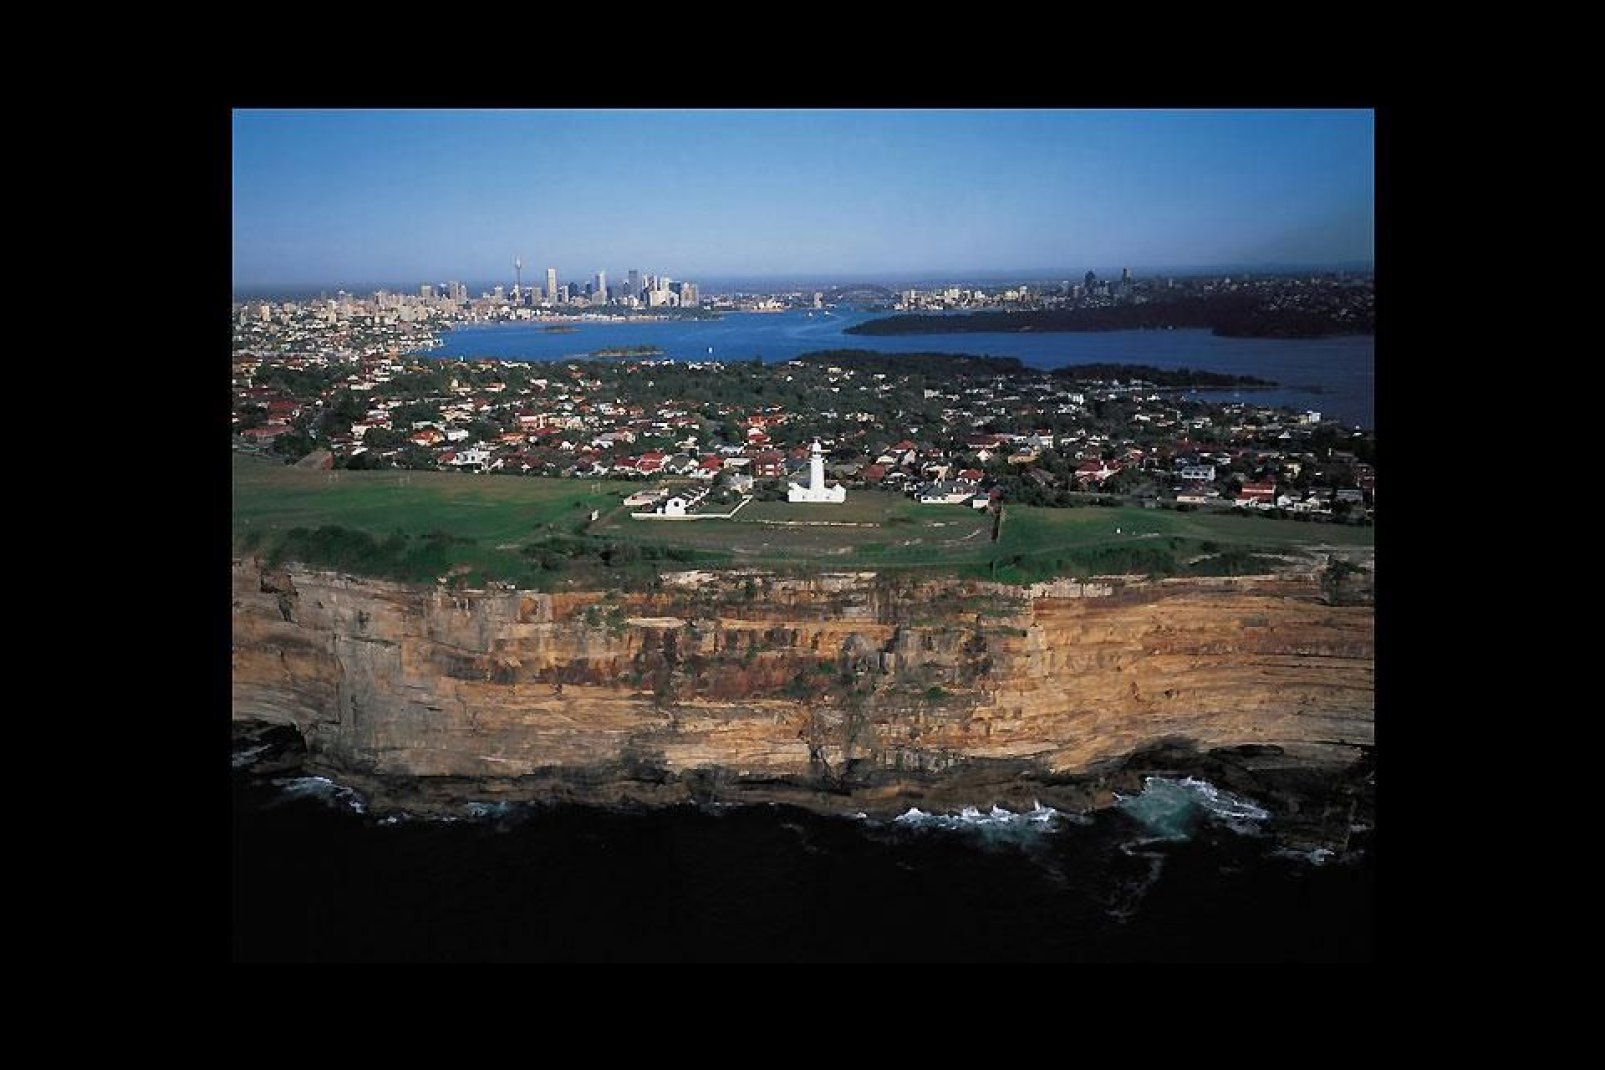 La ciudad de Sydney reúne dos regiones: la llanura de Cumberland y la meseta de Hornsby.